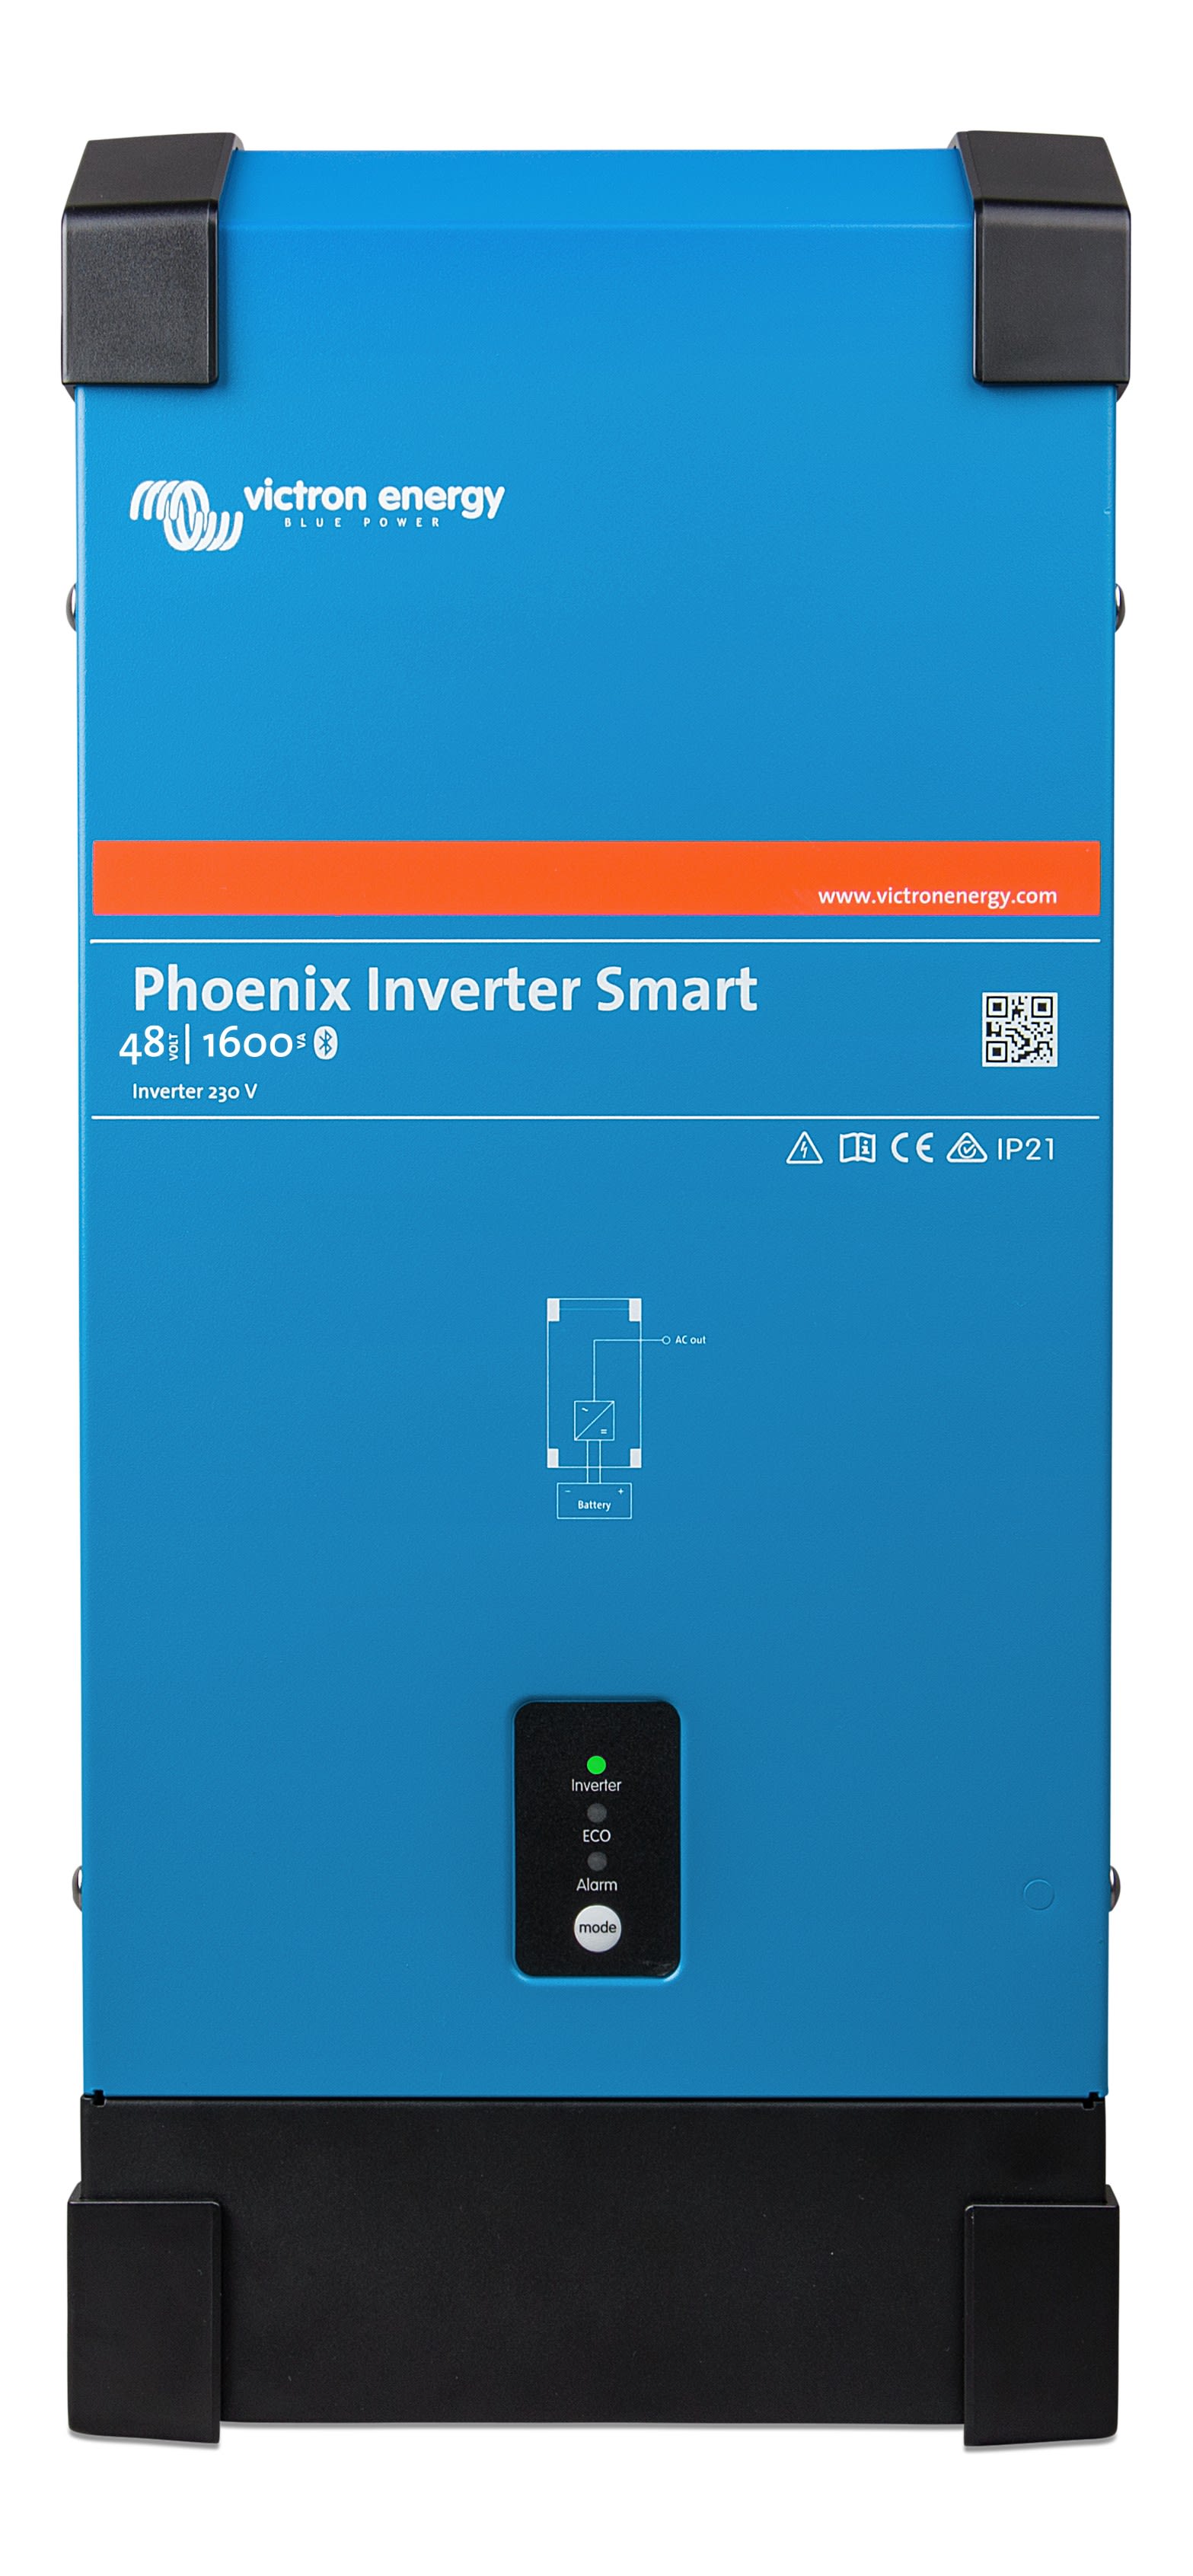 Madenr - Phoenix Inverter 48/1600 230V Smart